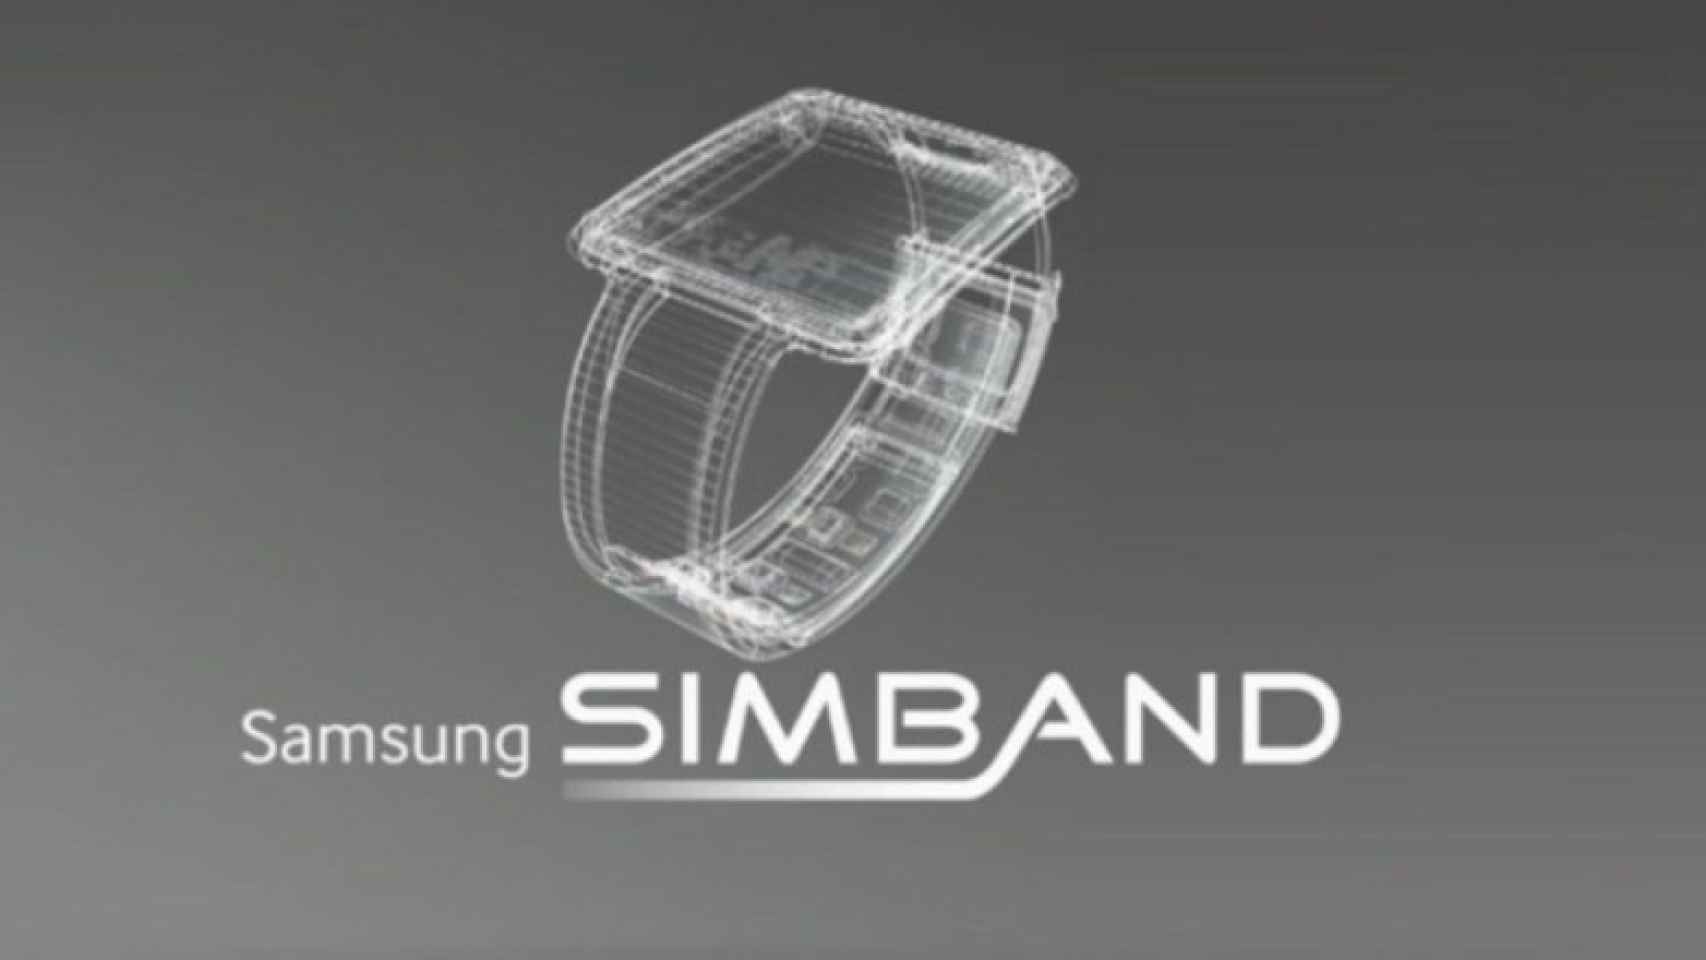 Samsung anuncia Simband, su apuesta por el deporte y la salud